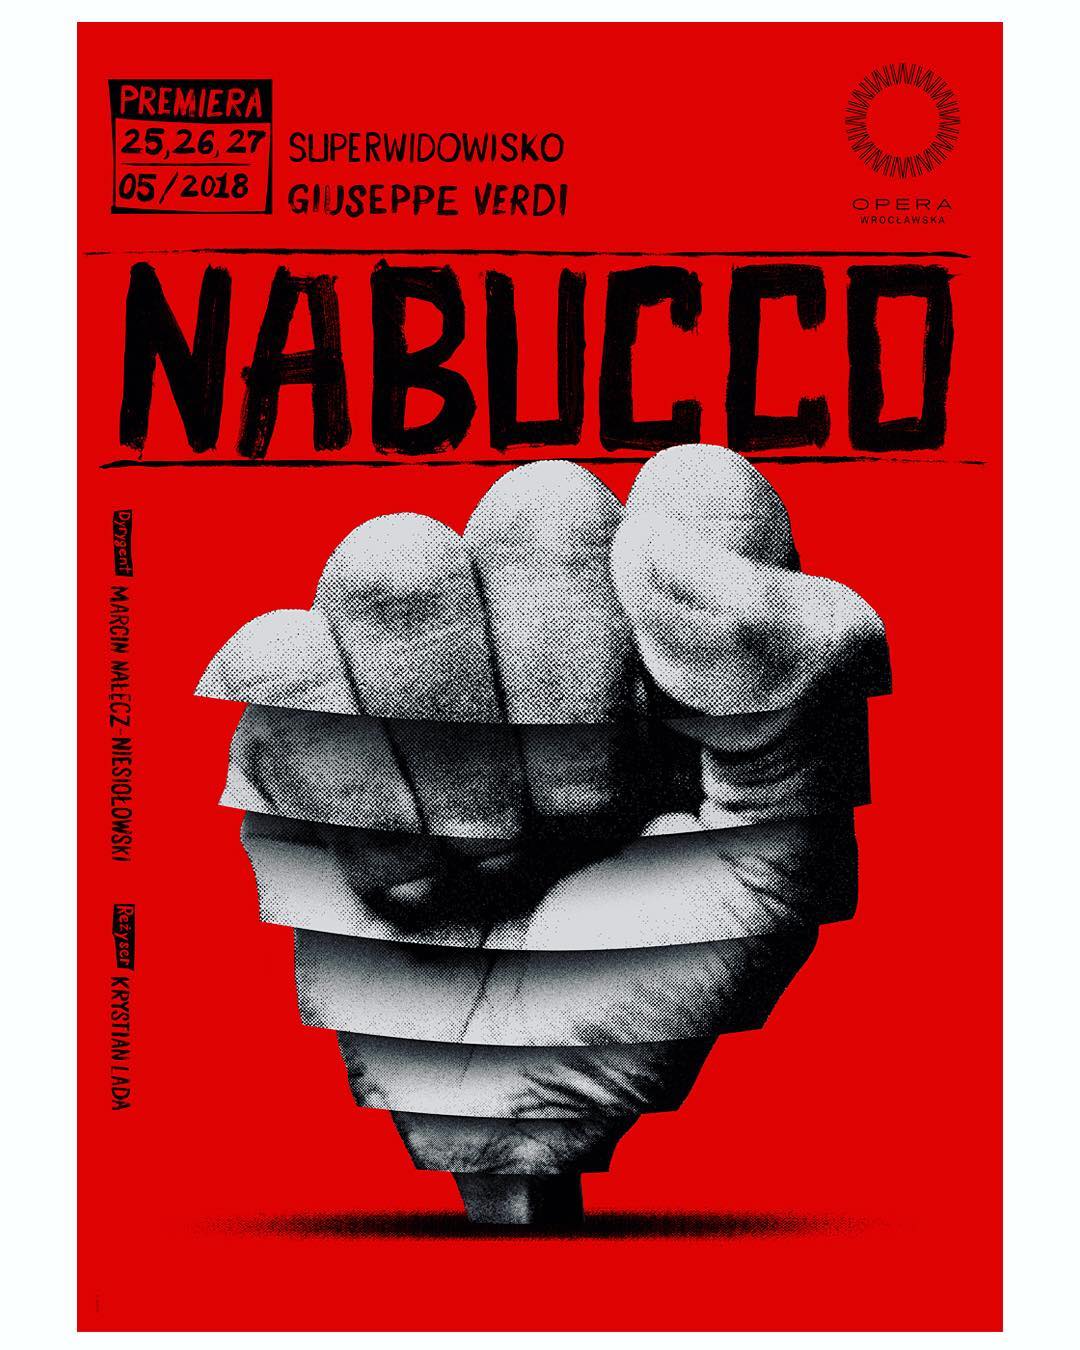 nabucco2